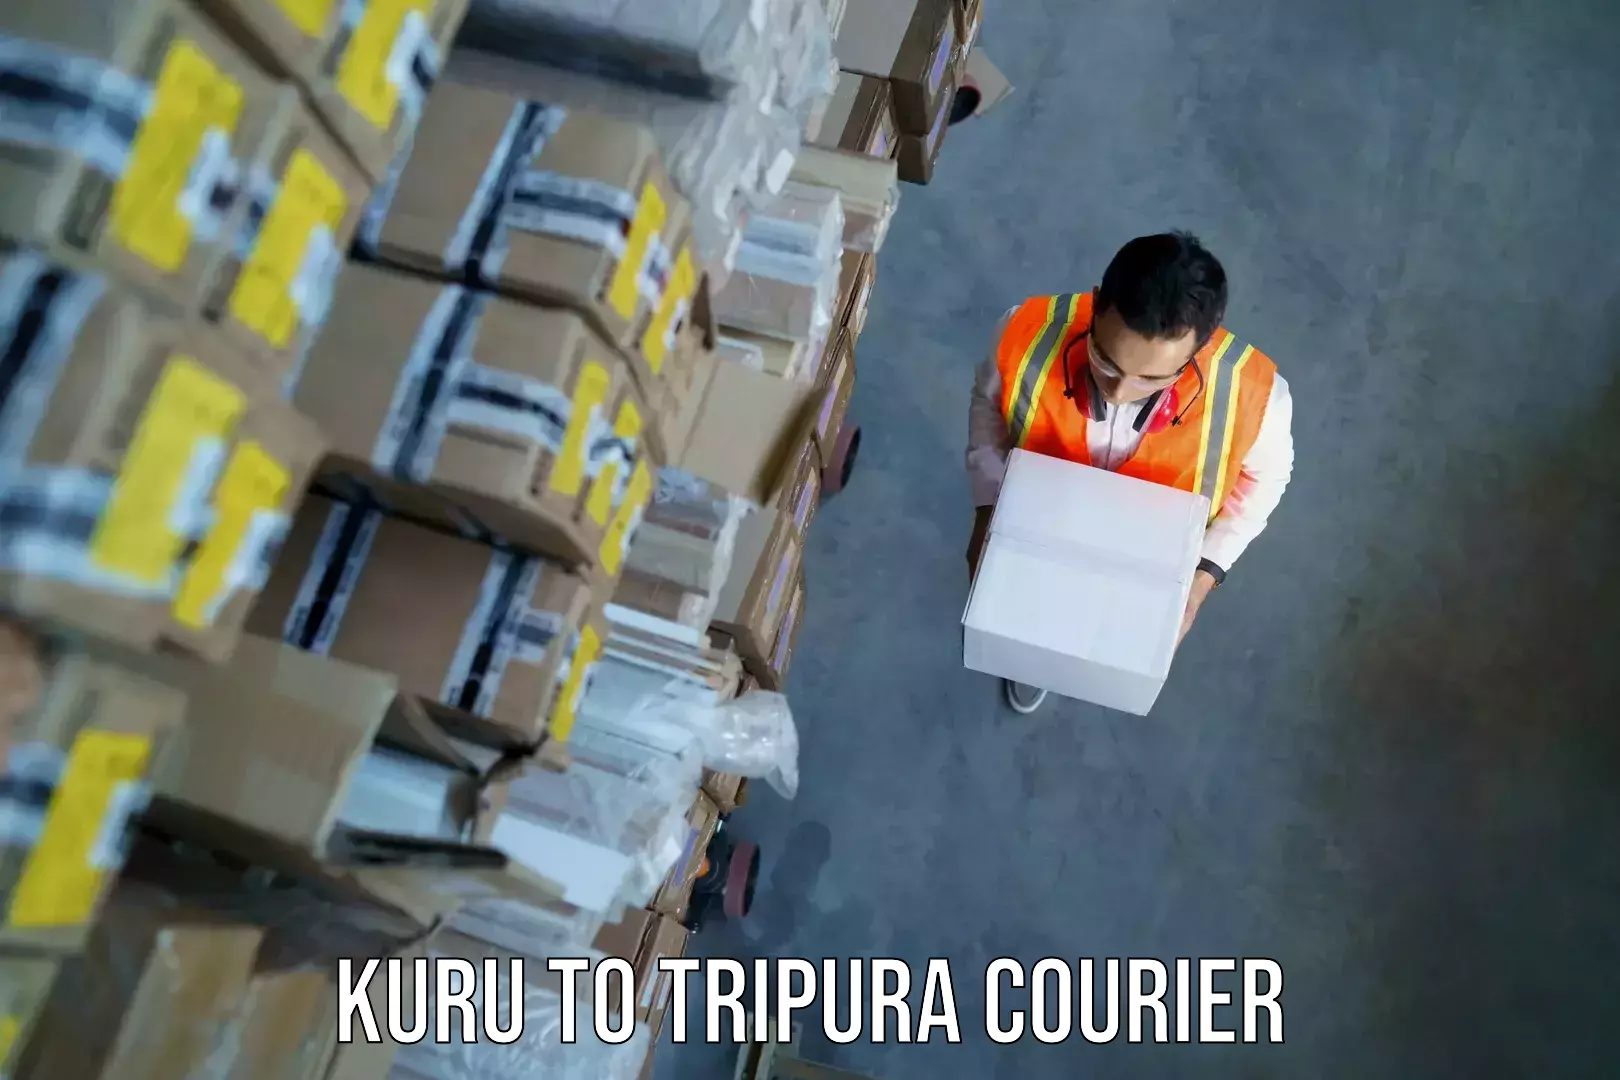 Door-to-door baggage service Kuru to Tripura